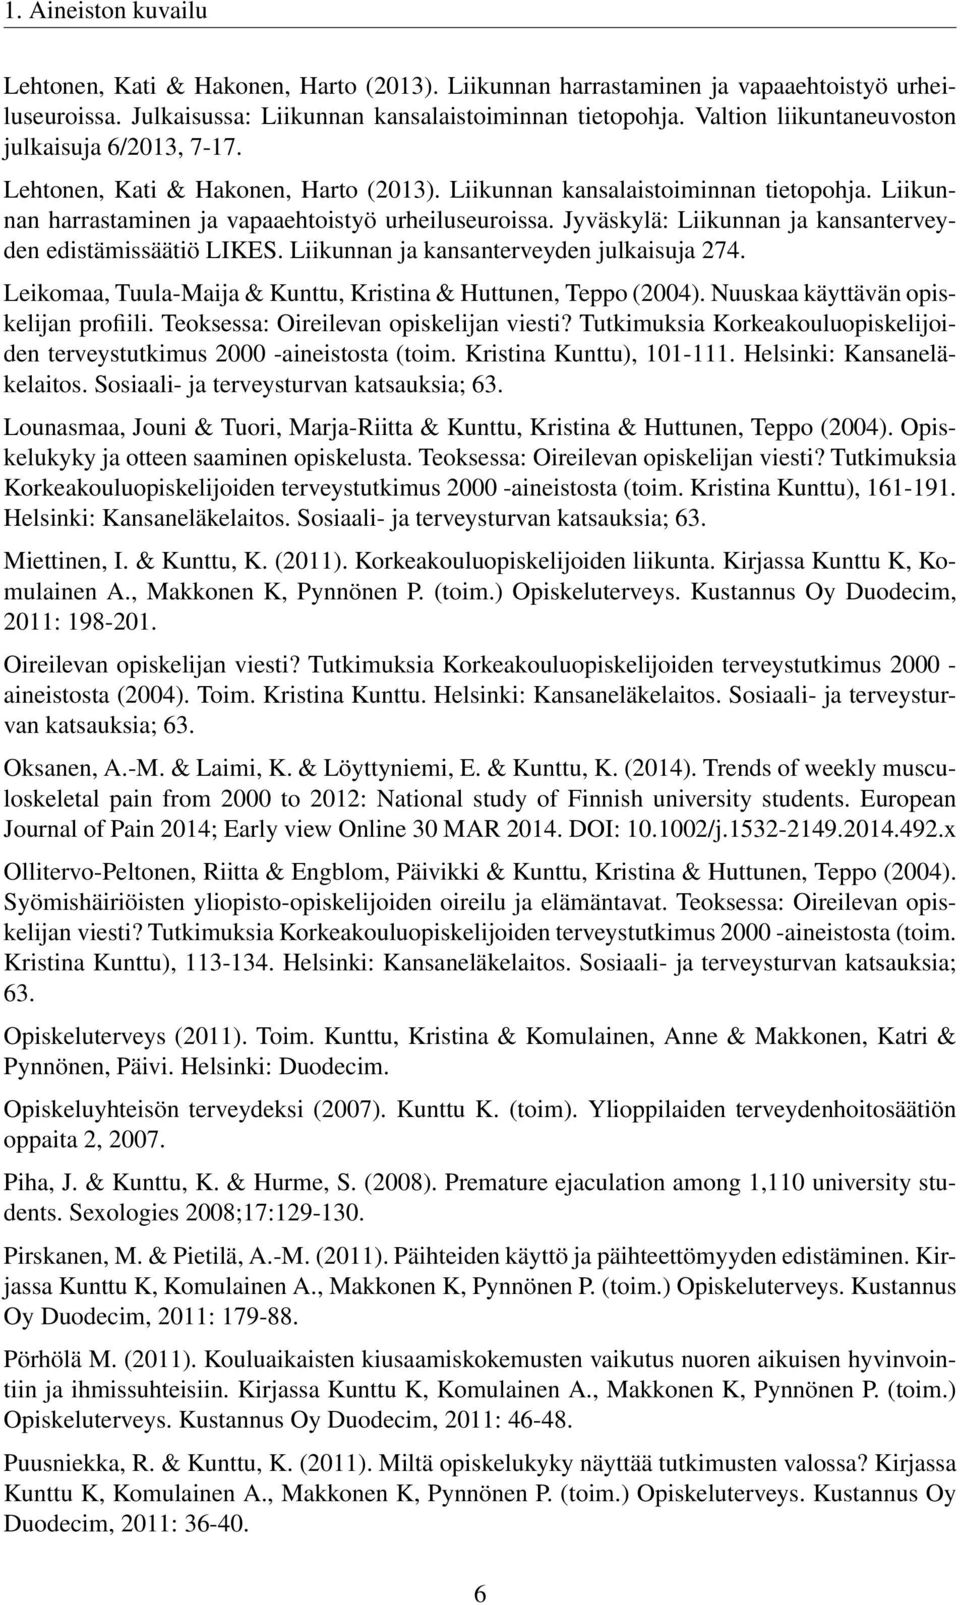 Jyväskylä: Liikunnan ja kansanterveyden edistämissäätiö LIKES. Liikunnan ja kansanterveyden julkaisuja 274. Leikomaa, Tuula-Maija & Kunttu, Kristina & Huttunen, Teppo (2004).